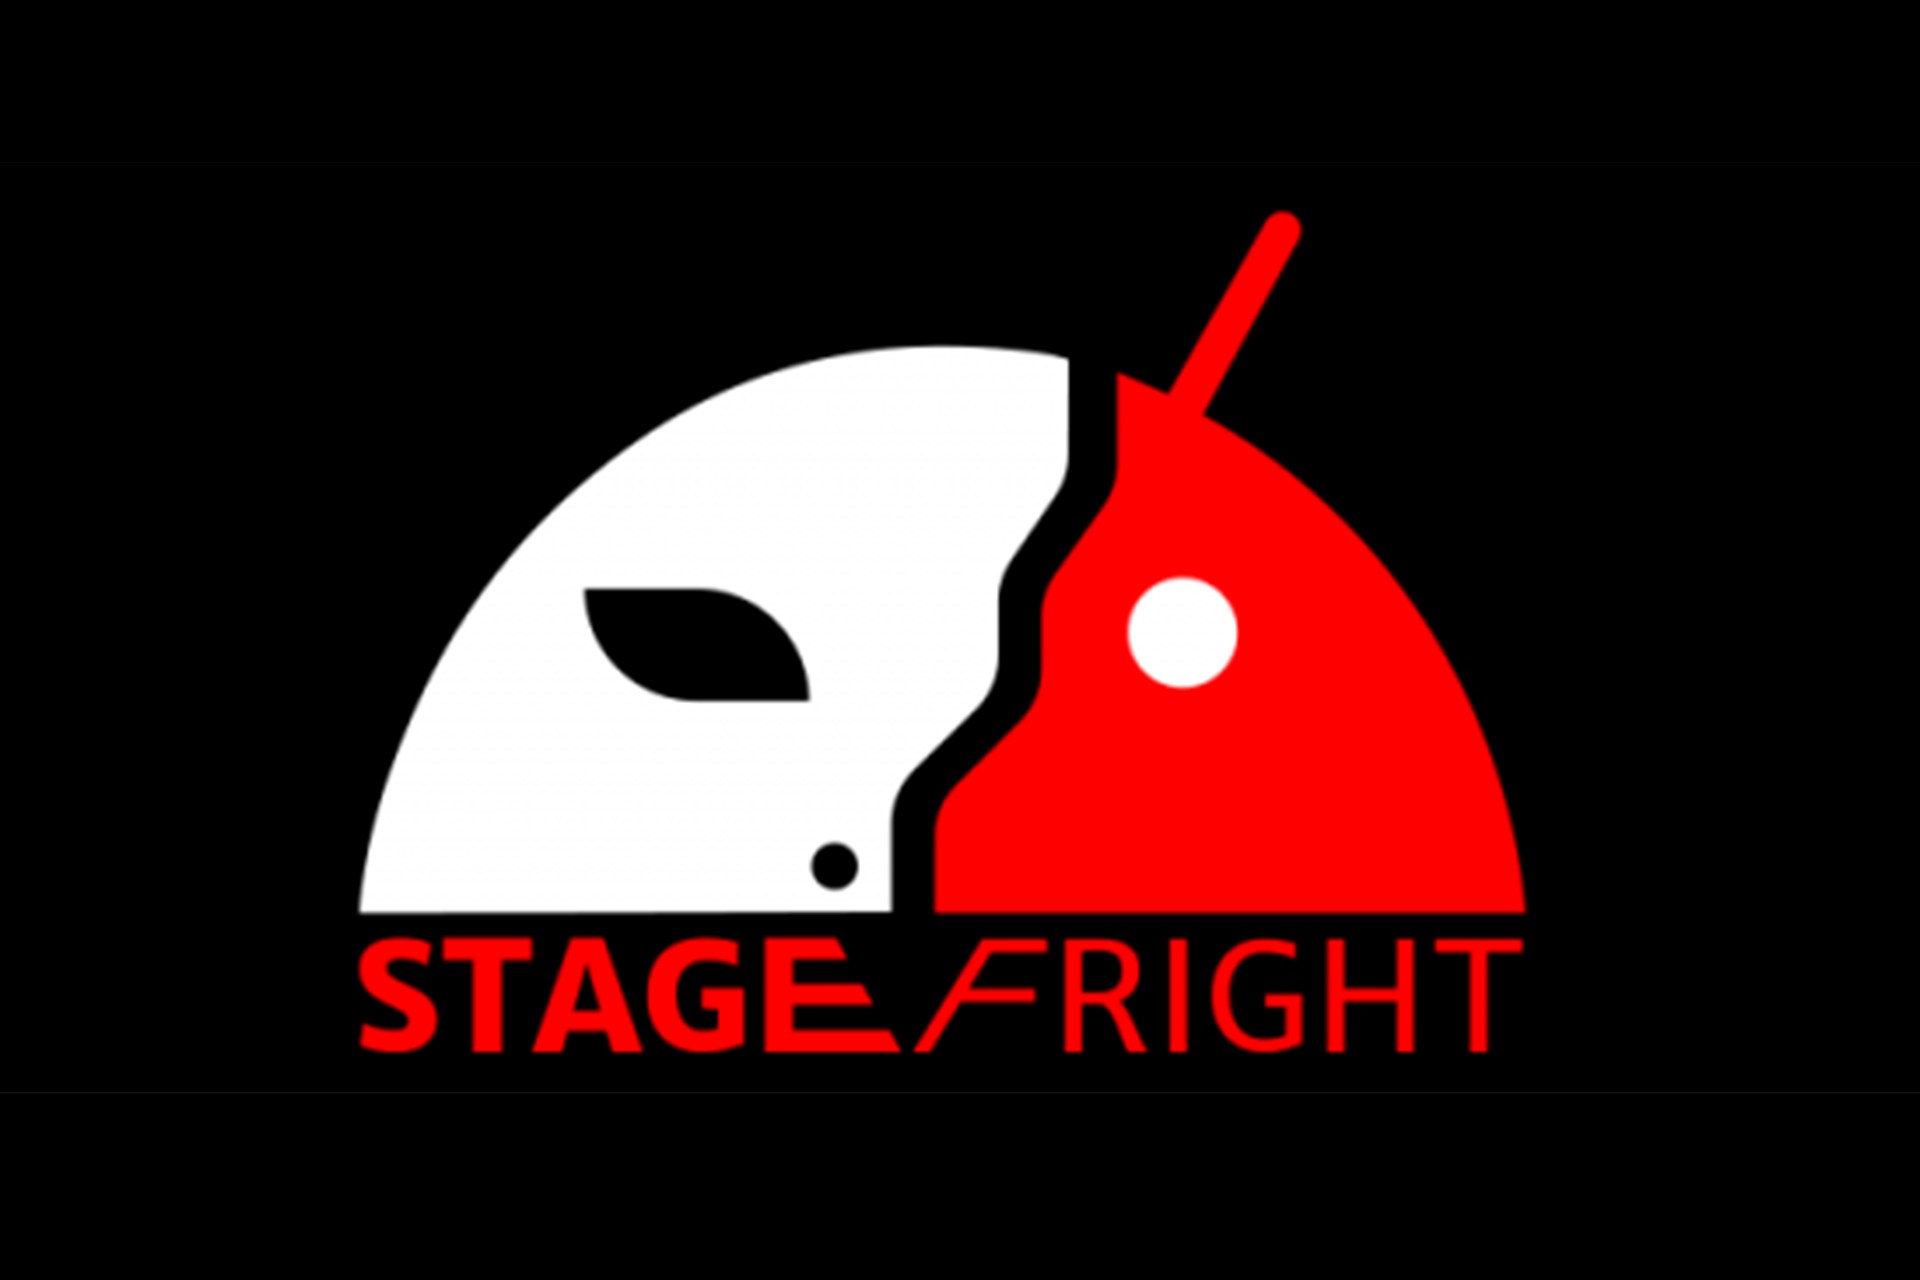 StageFright_Imagen2